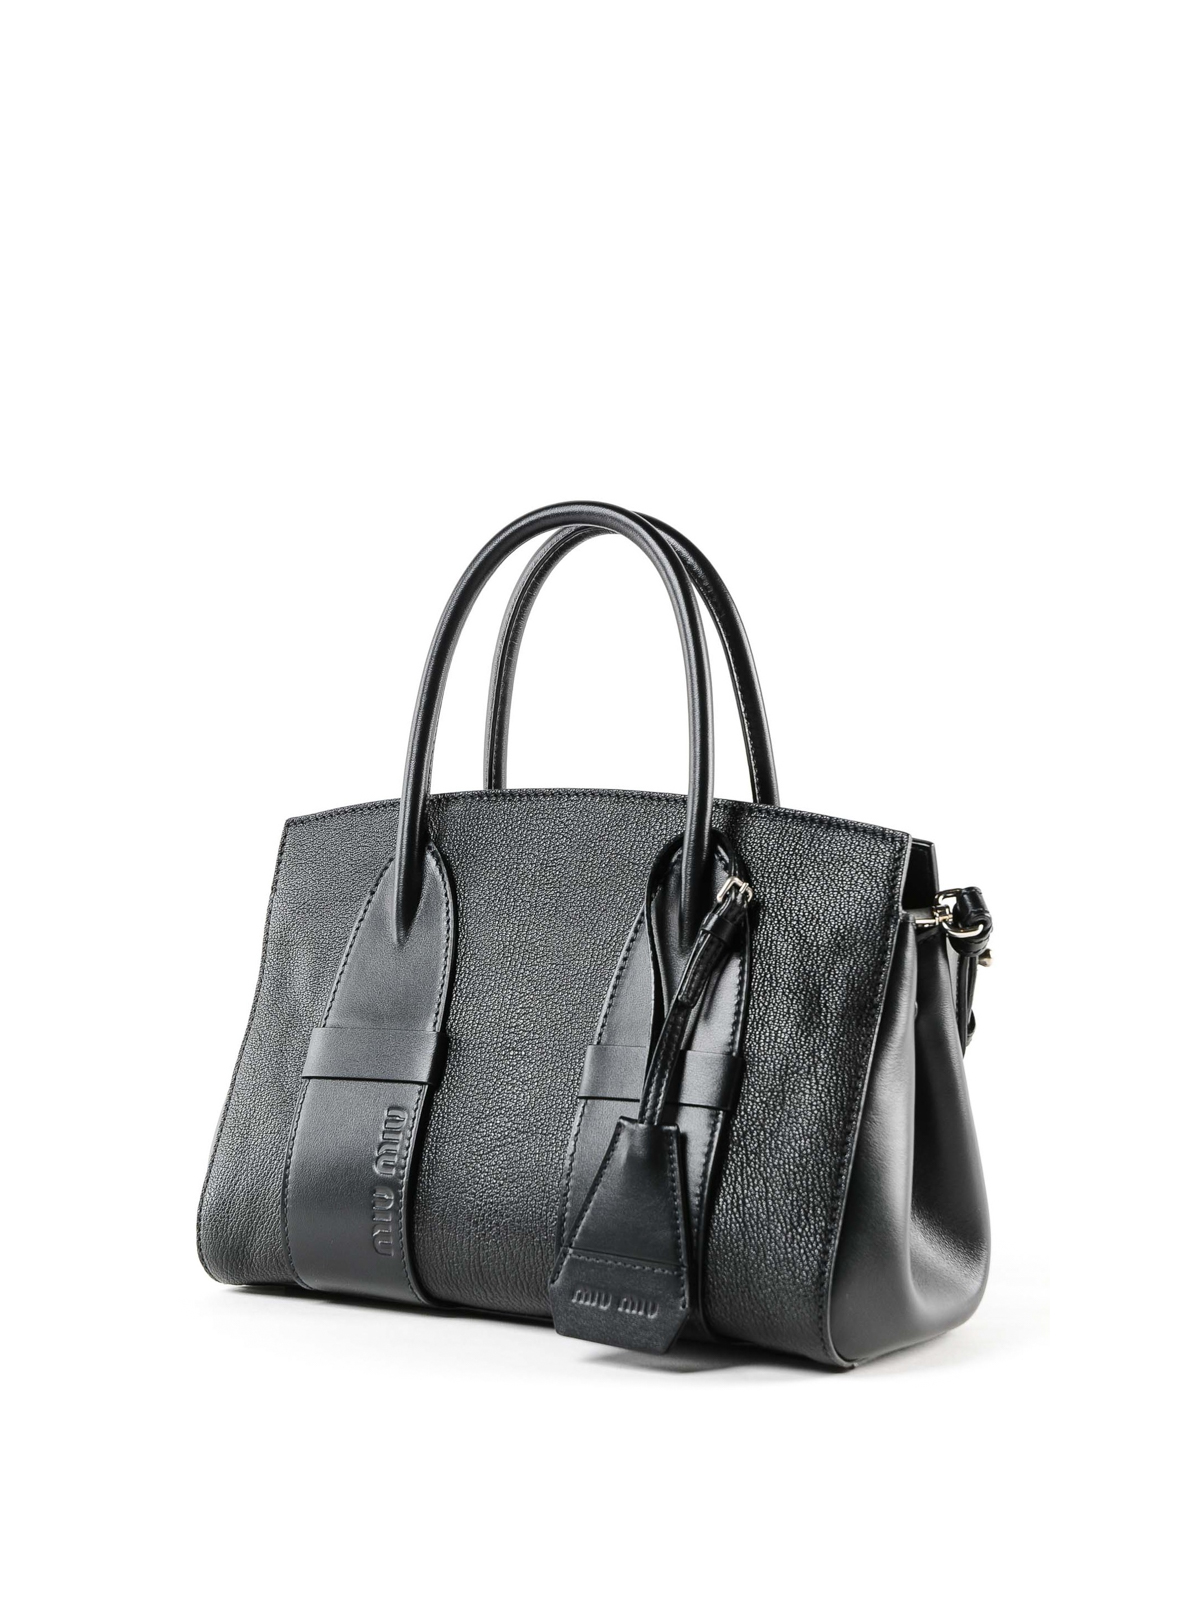 Miu Miu - Black grain leather small tote bag - totes bags ...